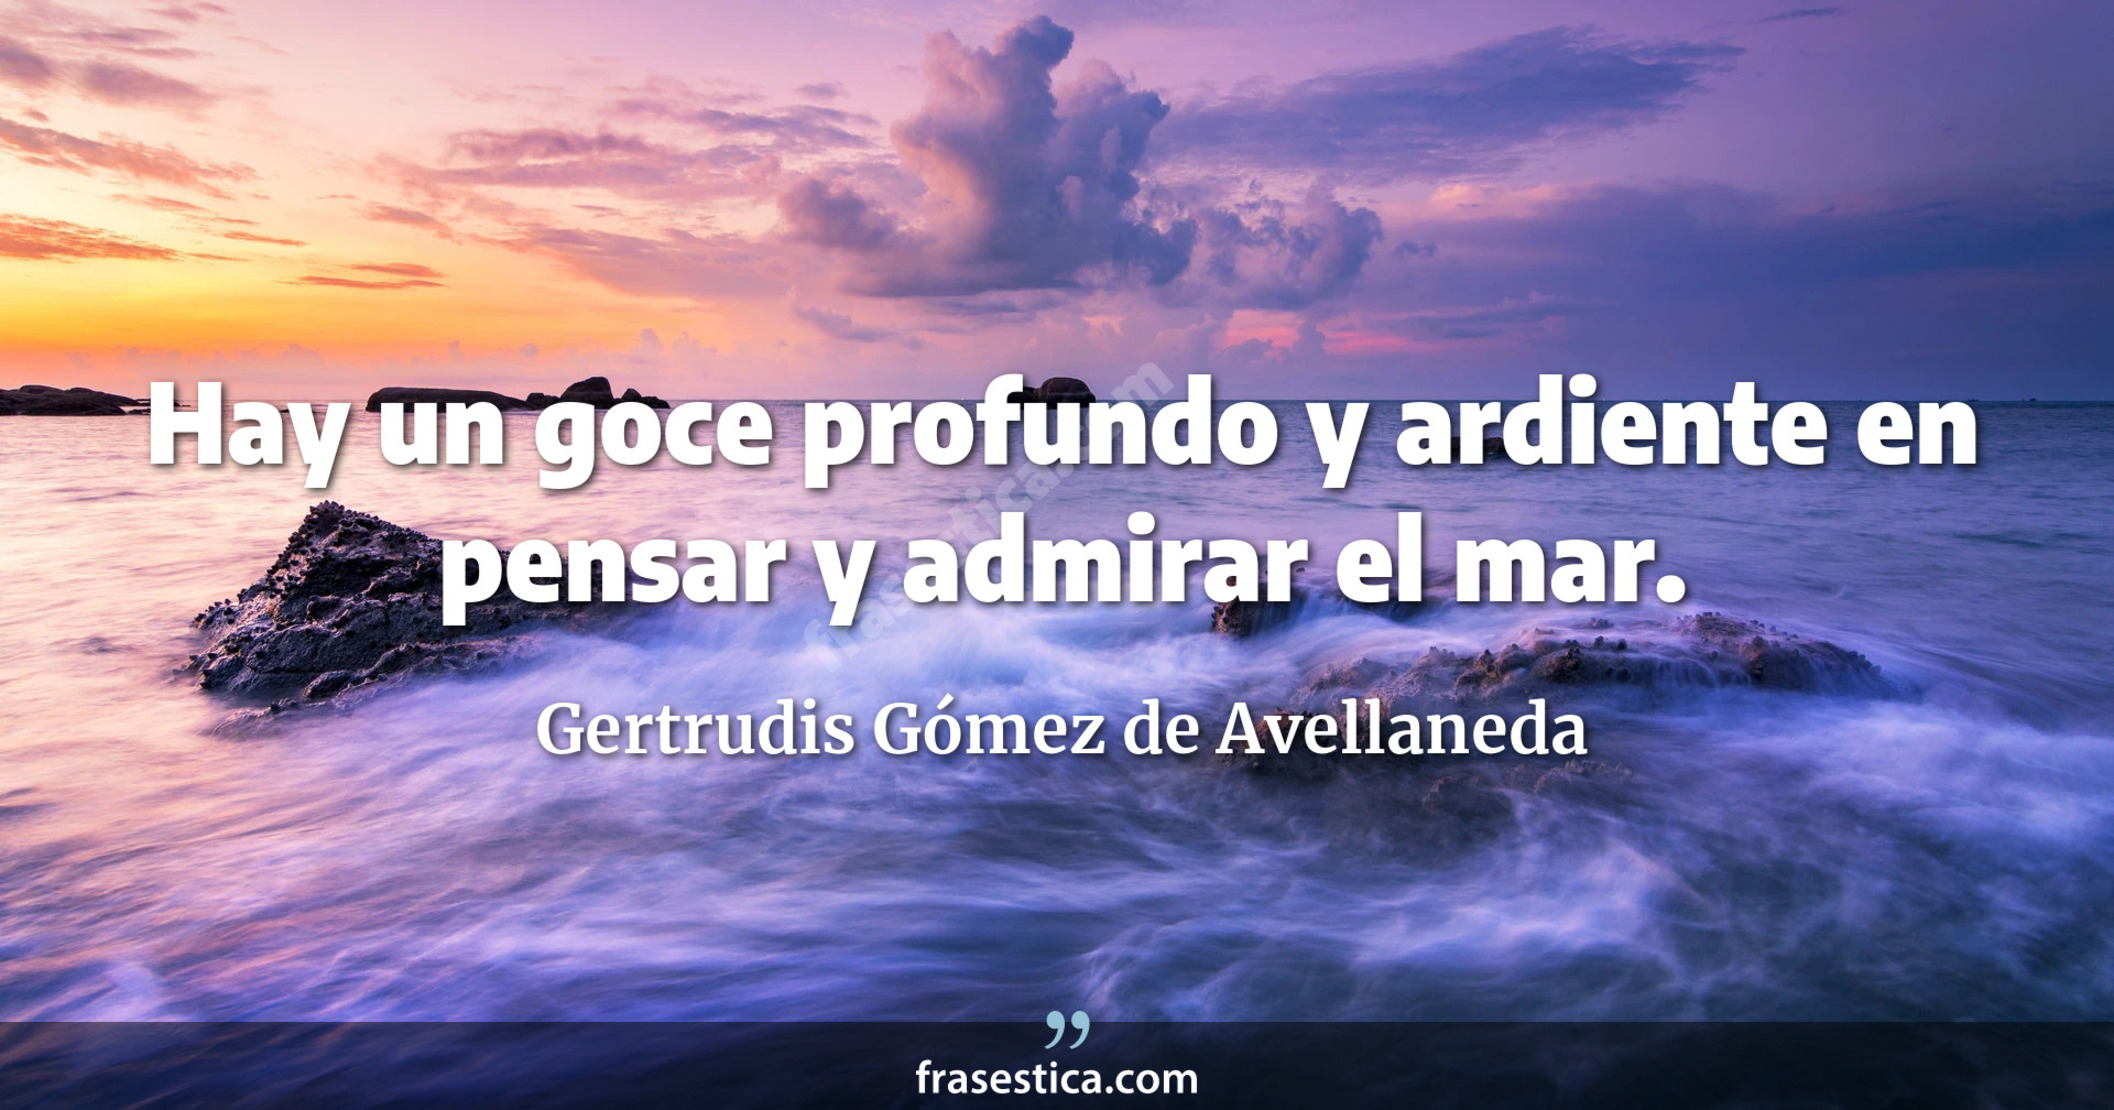 Hay un goce profundo y ardiente en pensar y admirar el mar. - Gertrudis Gómez de Avellaneda